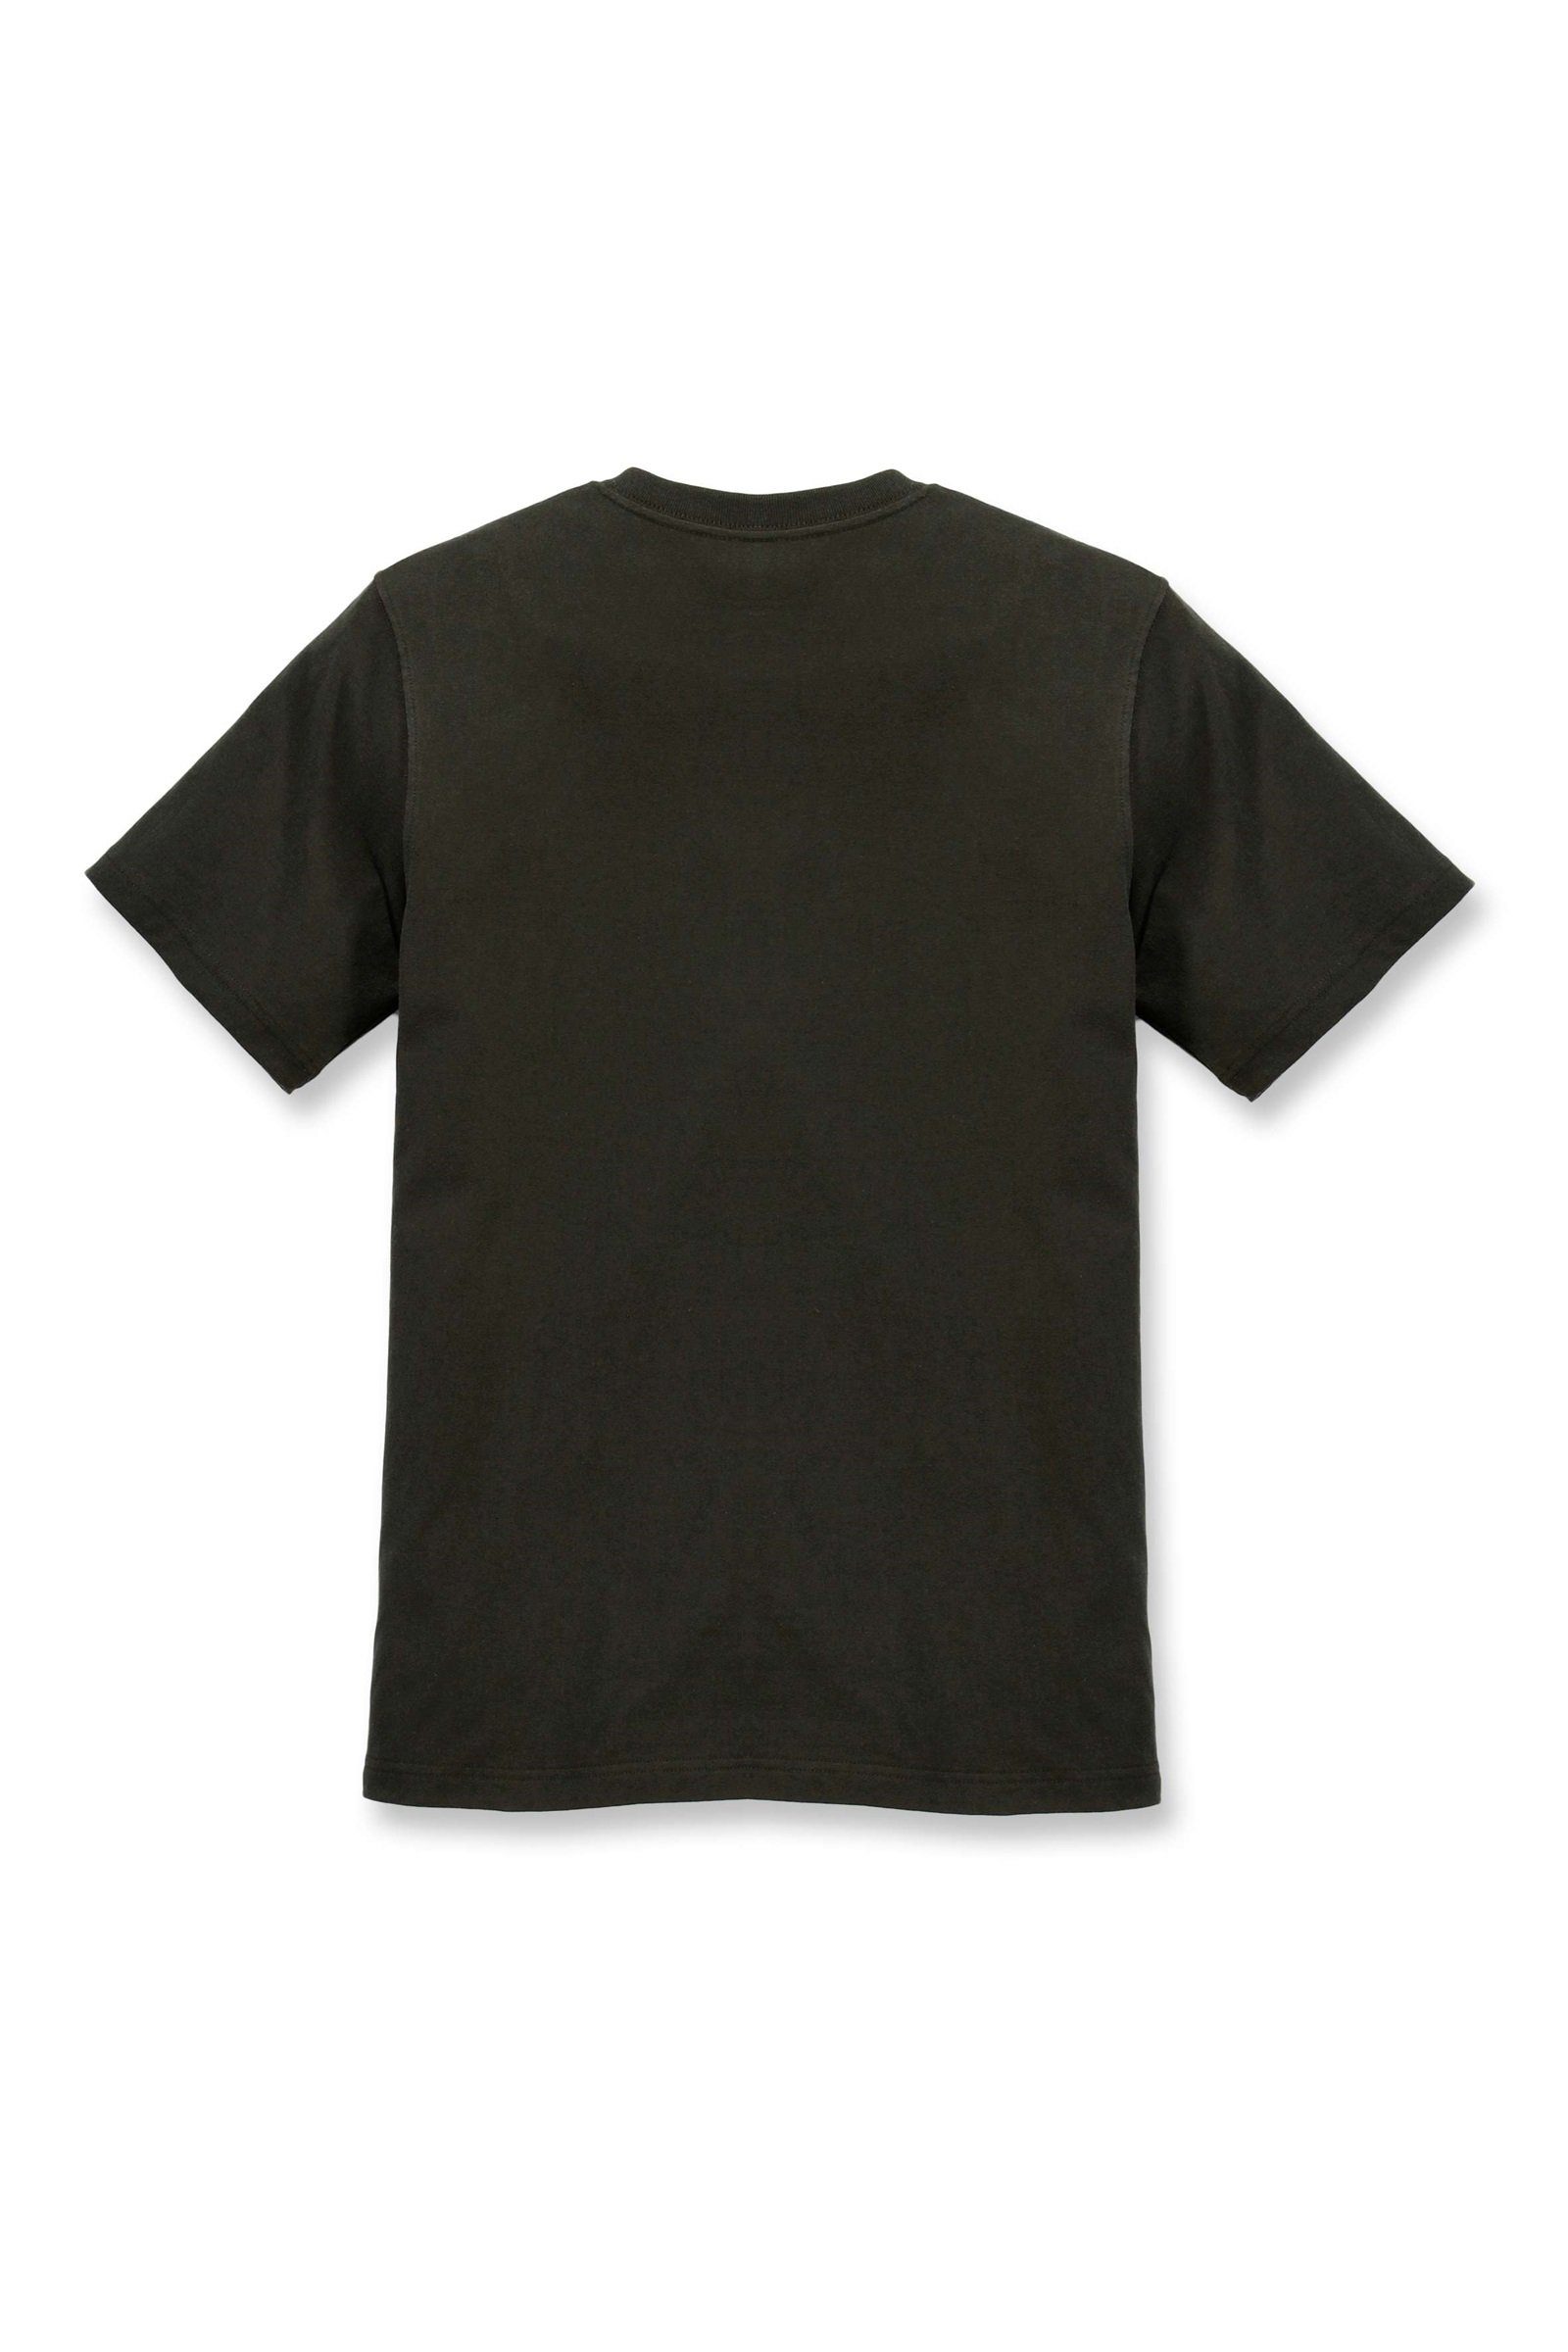 peat Adult T-Shirt Graphic Relaxed Heavyweight Carhartt Carhartt T-Shirt Logo Herren Fit Short-Sleeve